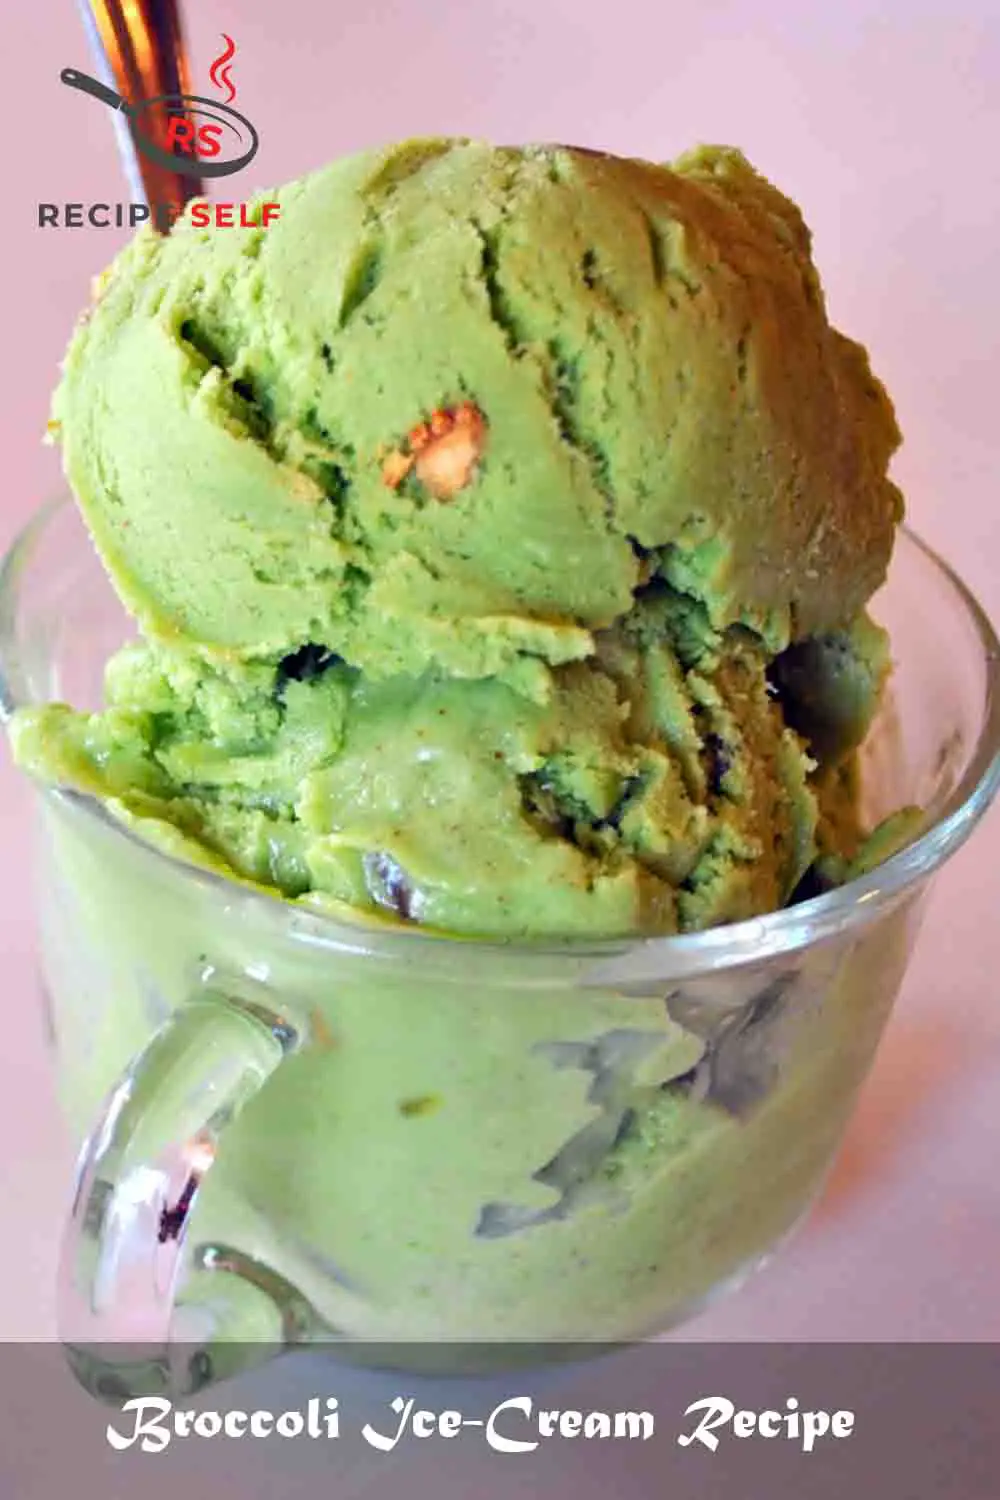 Broccoli Ice-Cream Recipe